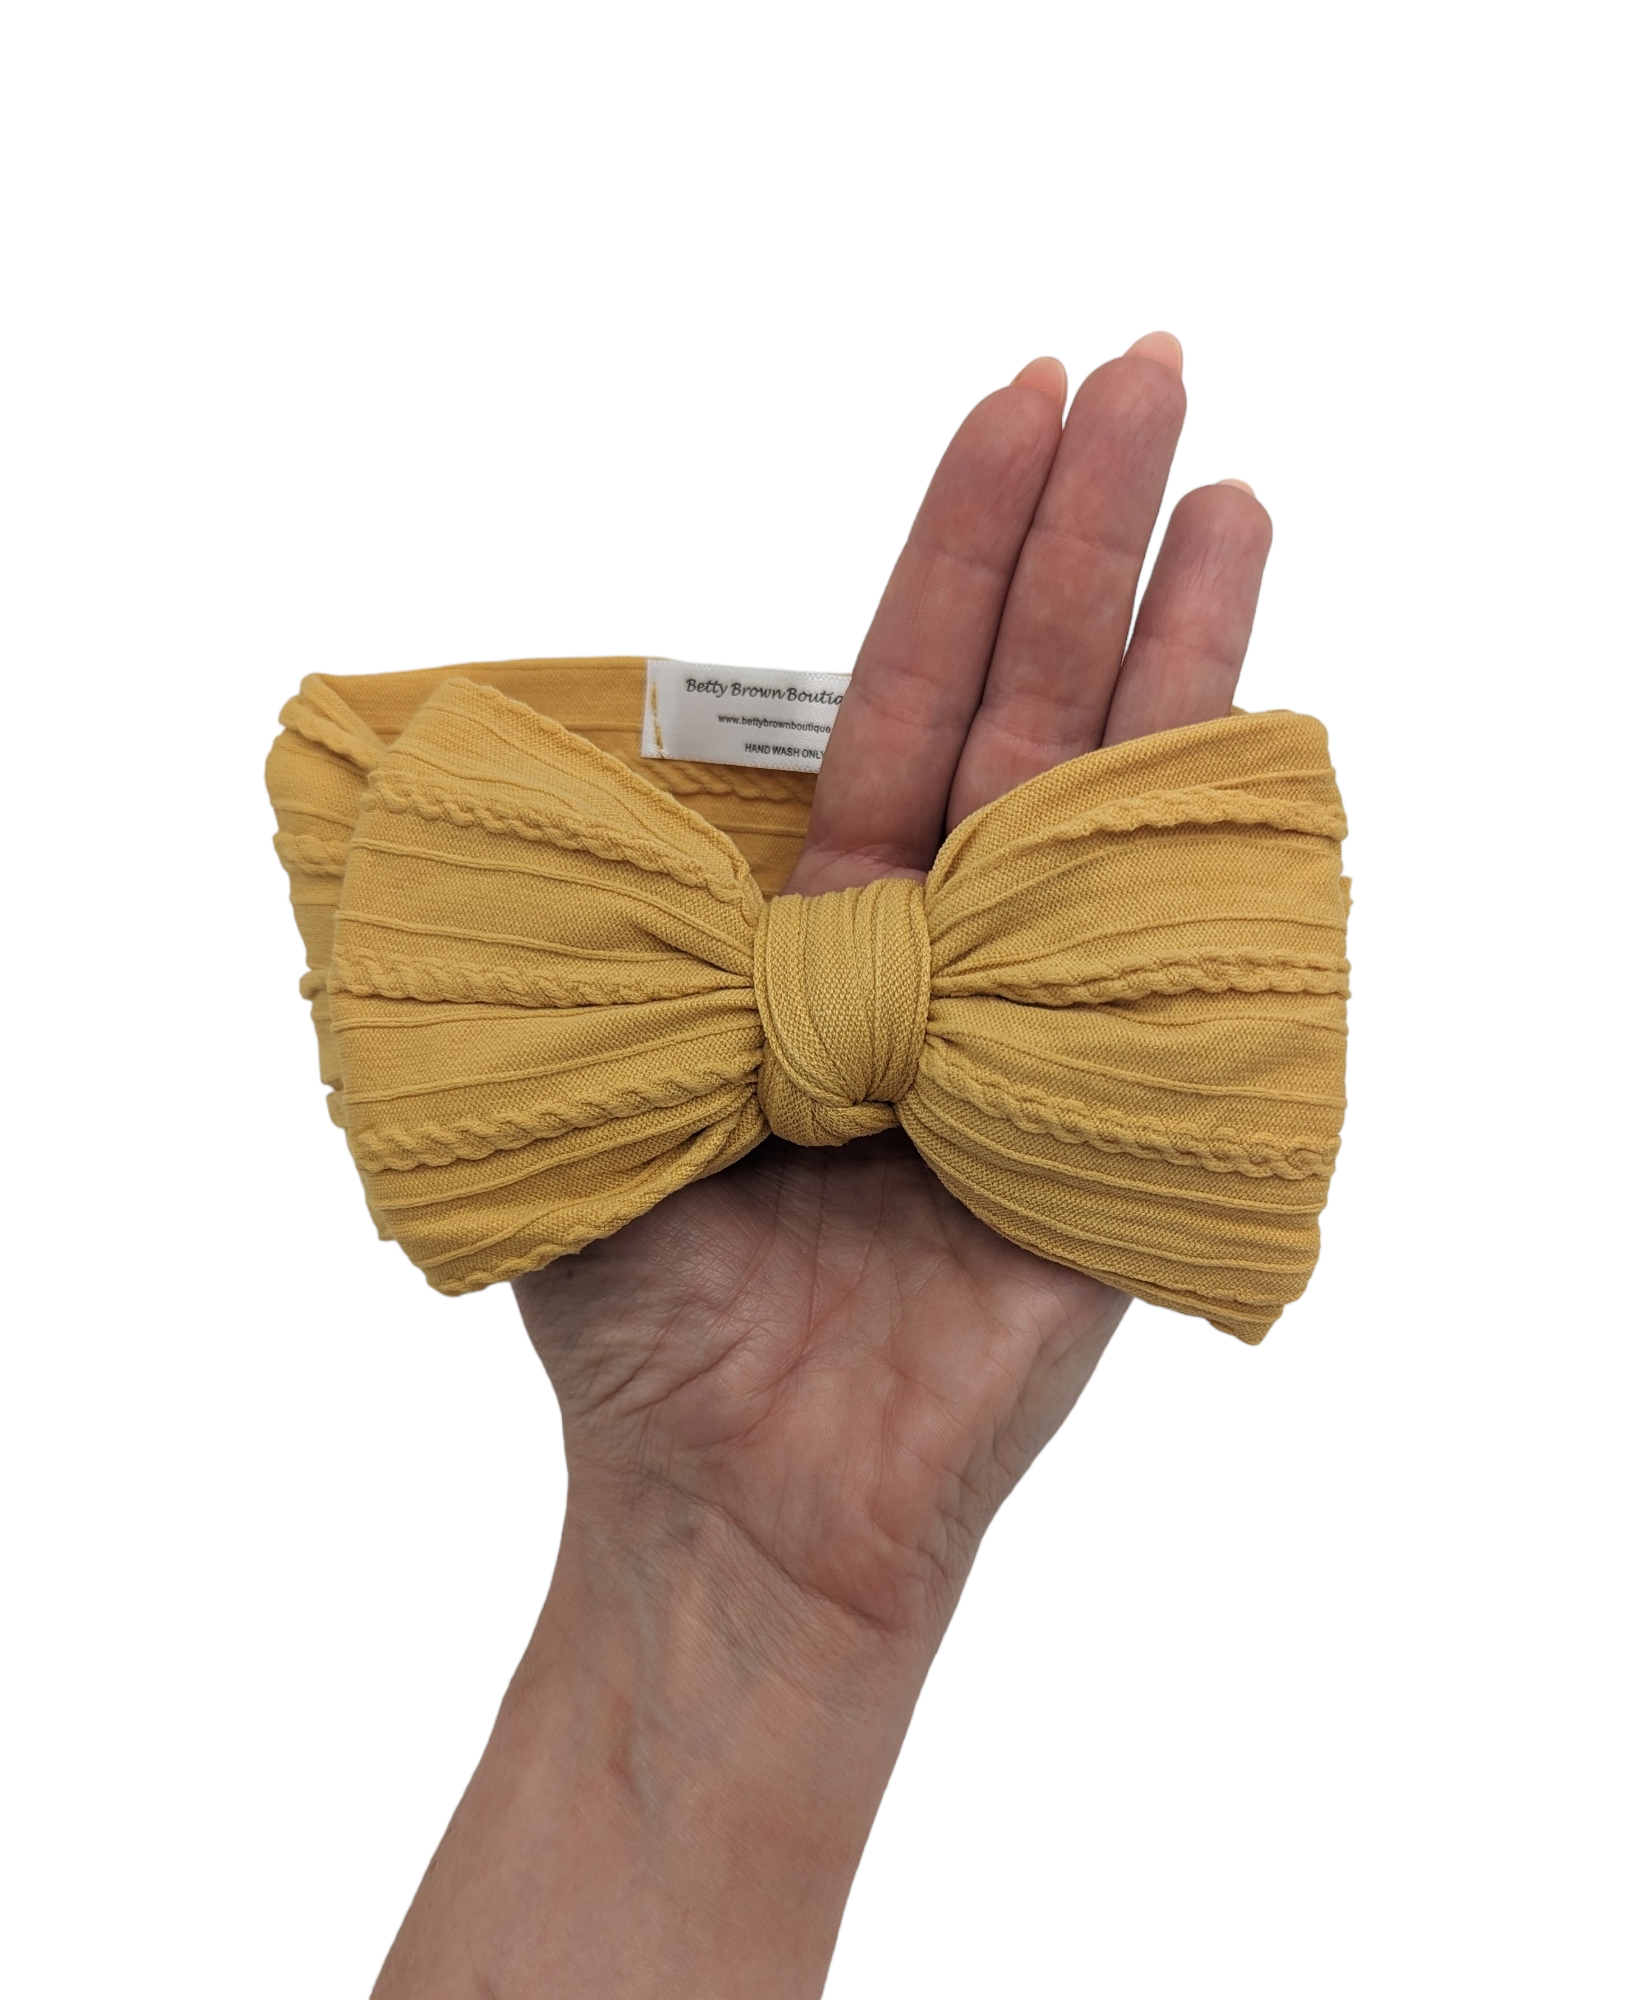 Dandelion larger bow cable knit headwrap - Betty Brown Boutique Ltd